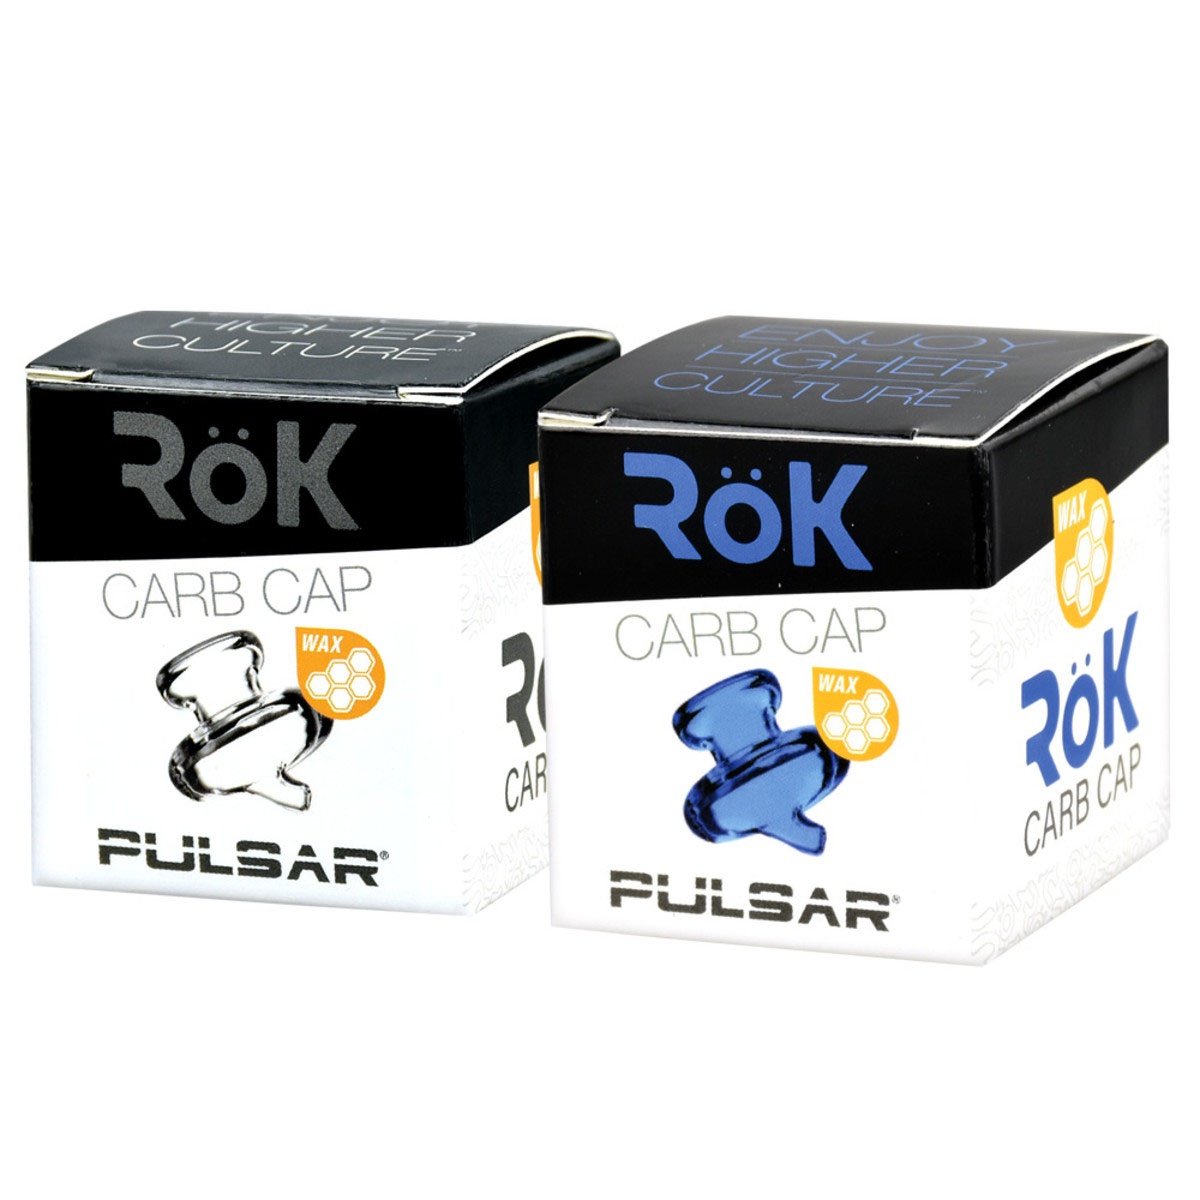 Pulsar RoK Wax Carb Cap CHARCOAL